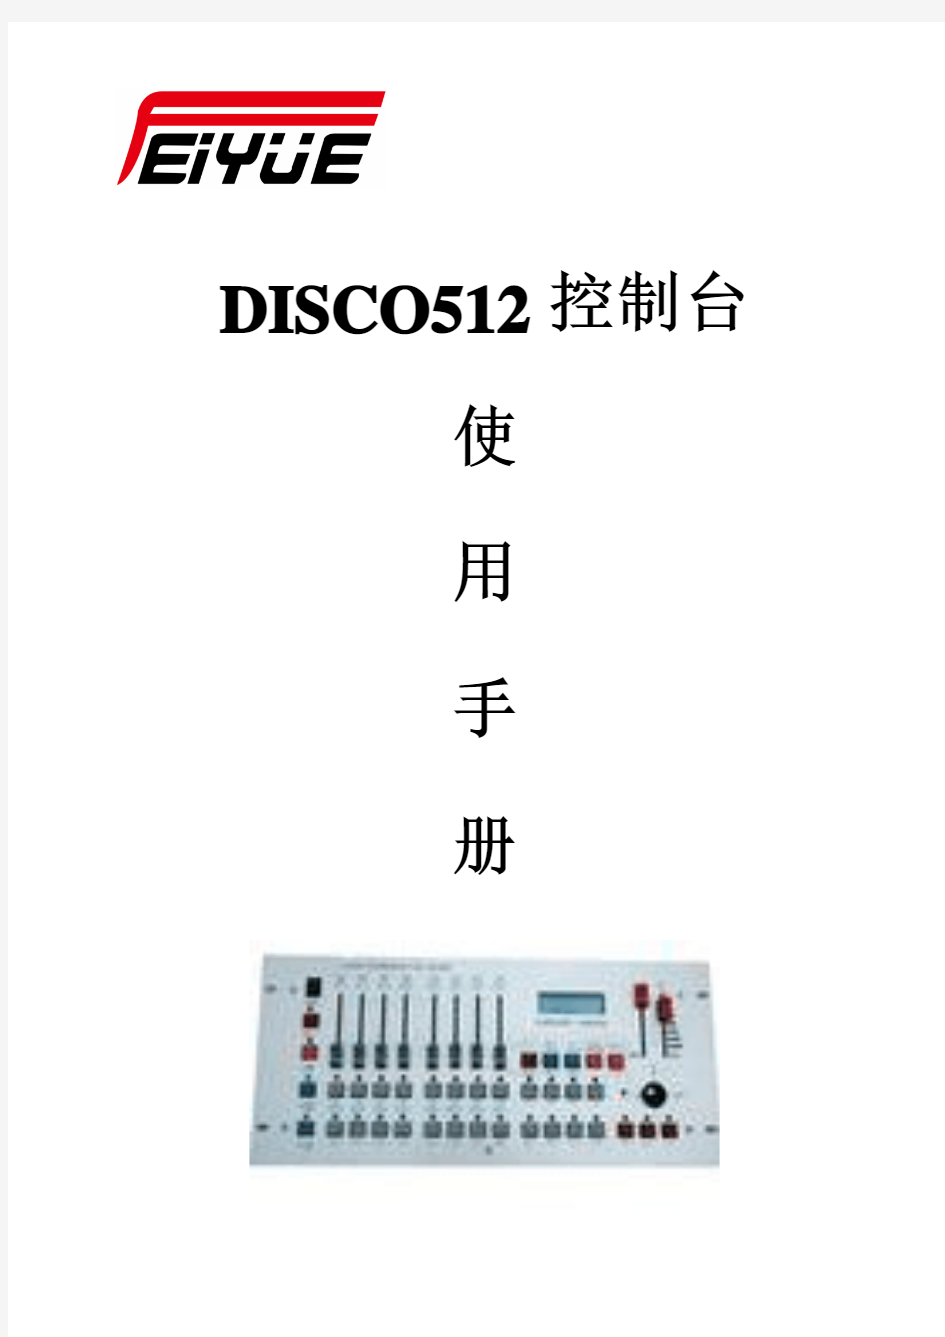 DISCO512摇头灯控制台说明书